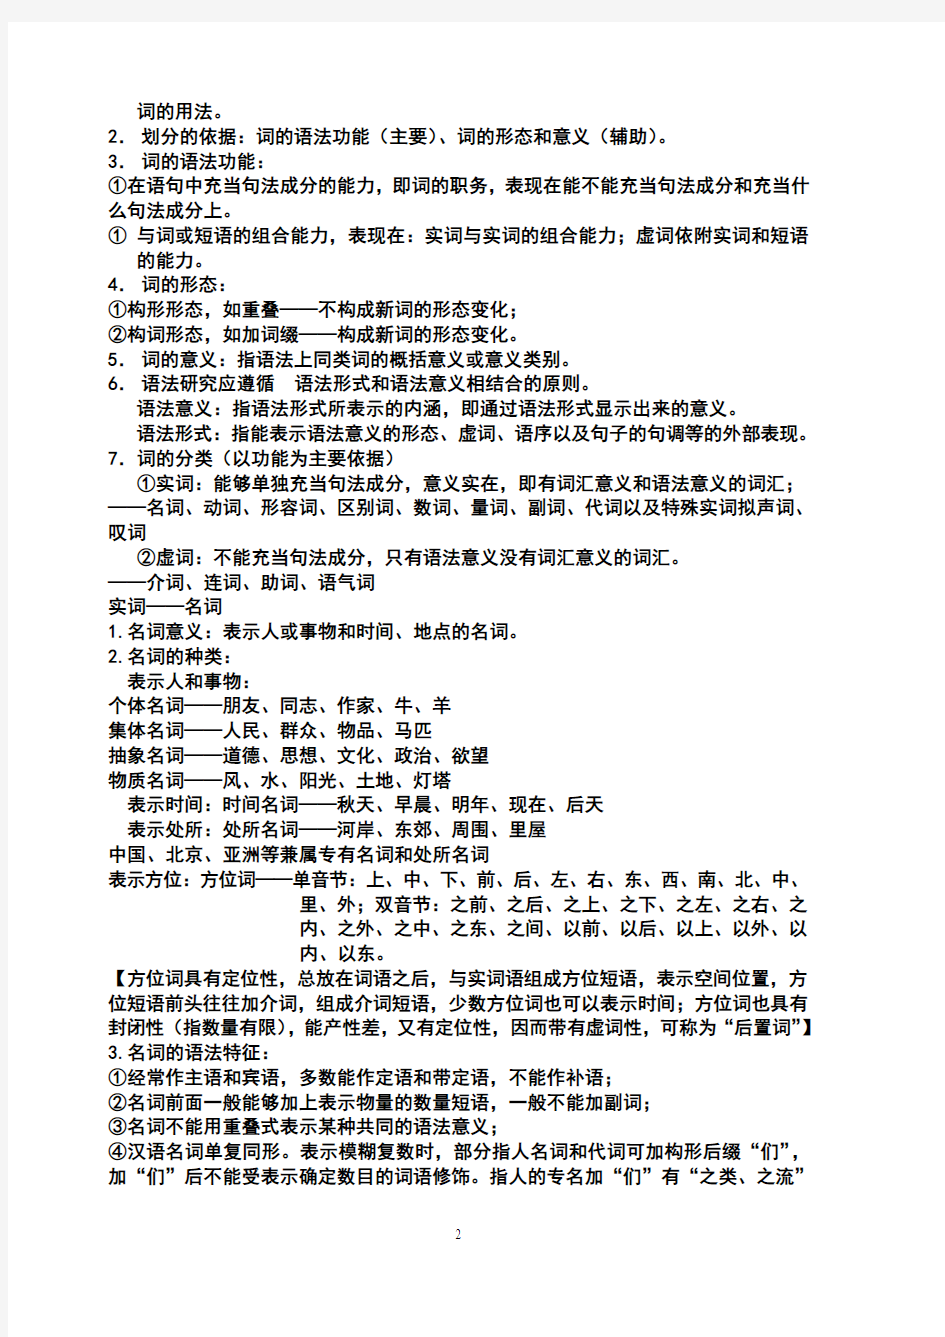 现代汉语复习资料(下)